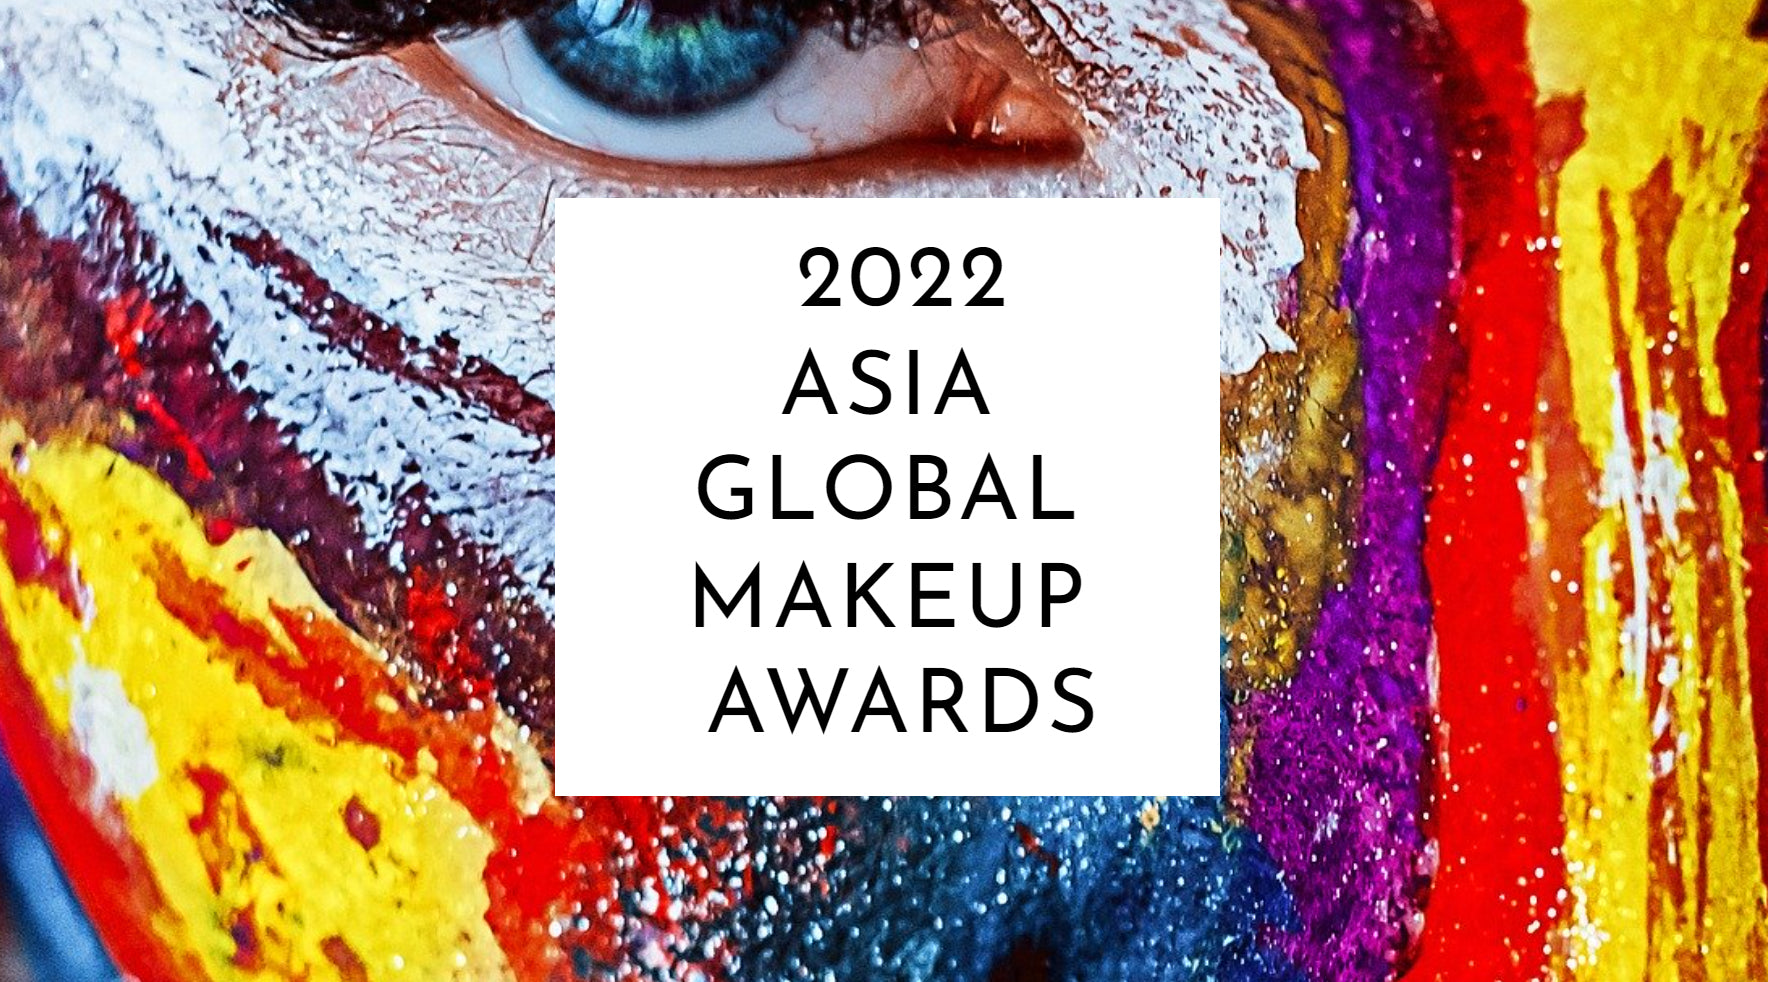 Winning at ASIA Global Makeup Awards 2022